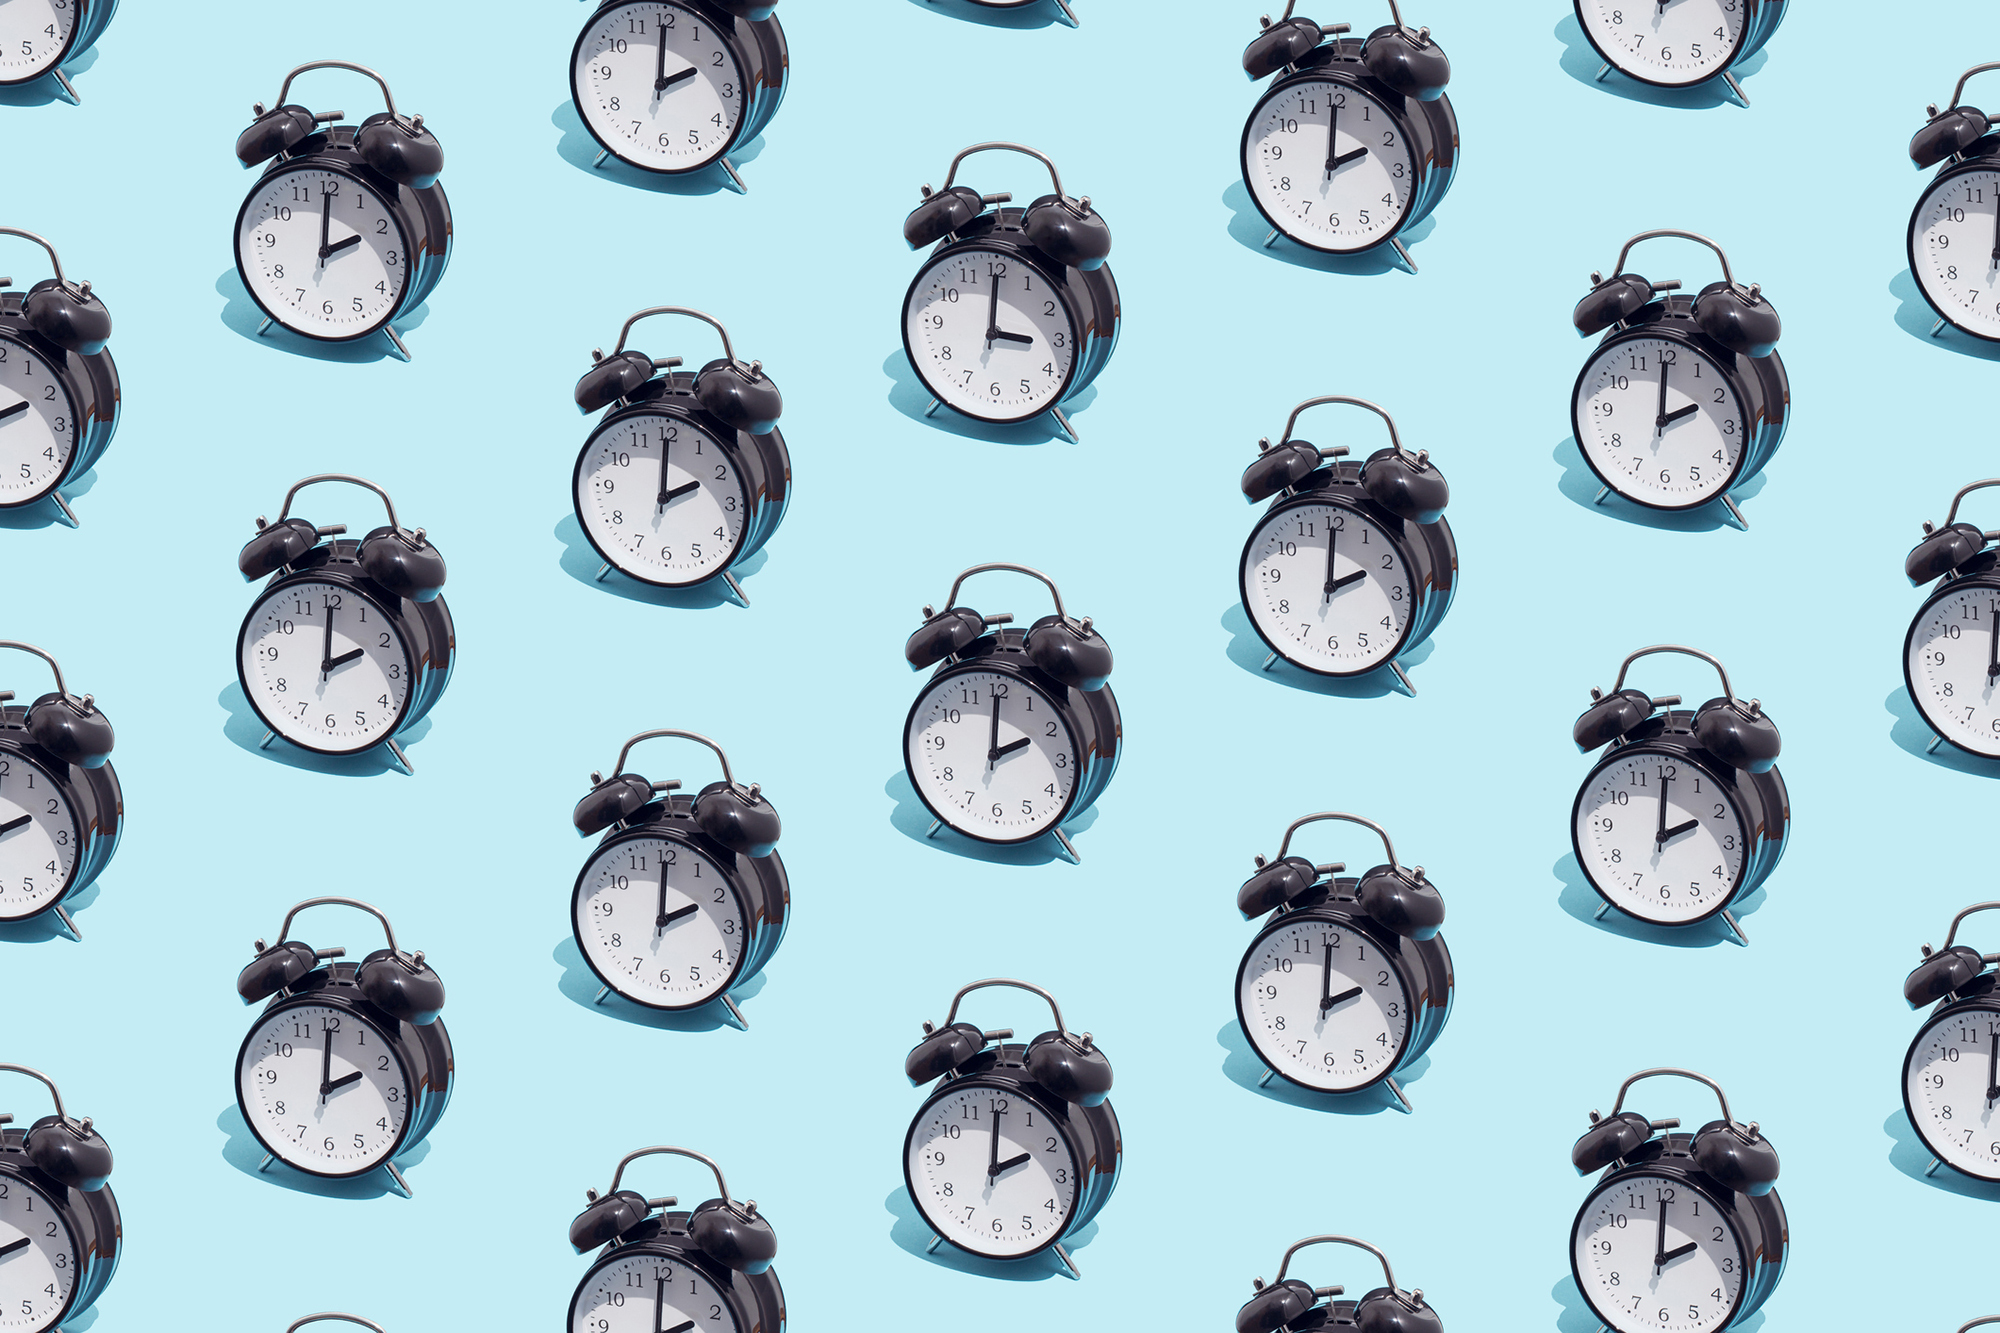 Pattern of black retro alarm clocks show 2 o'clock and one shows 3 o'clock